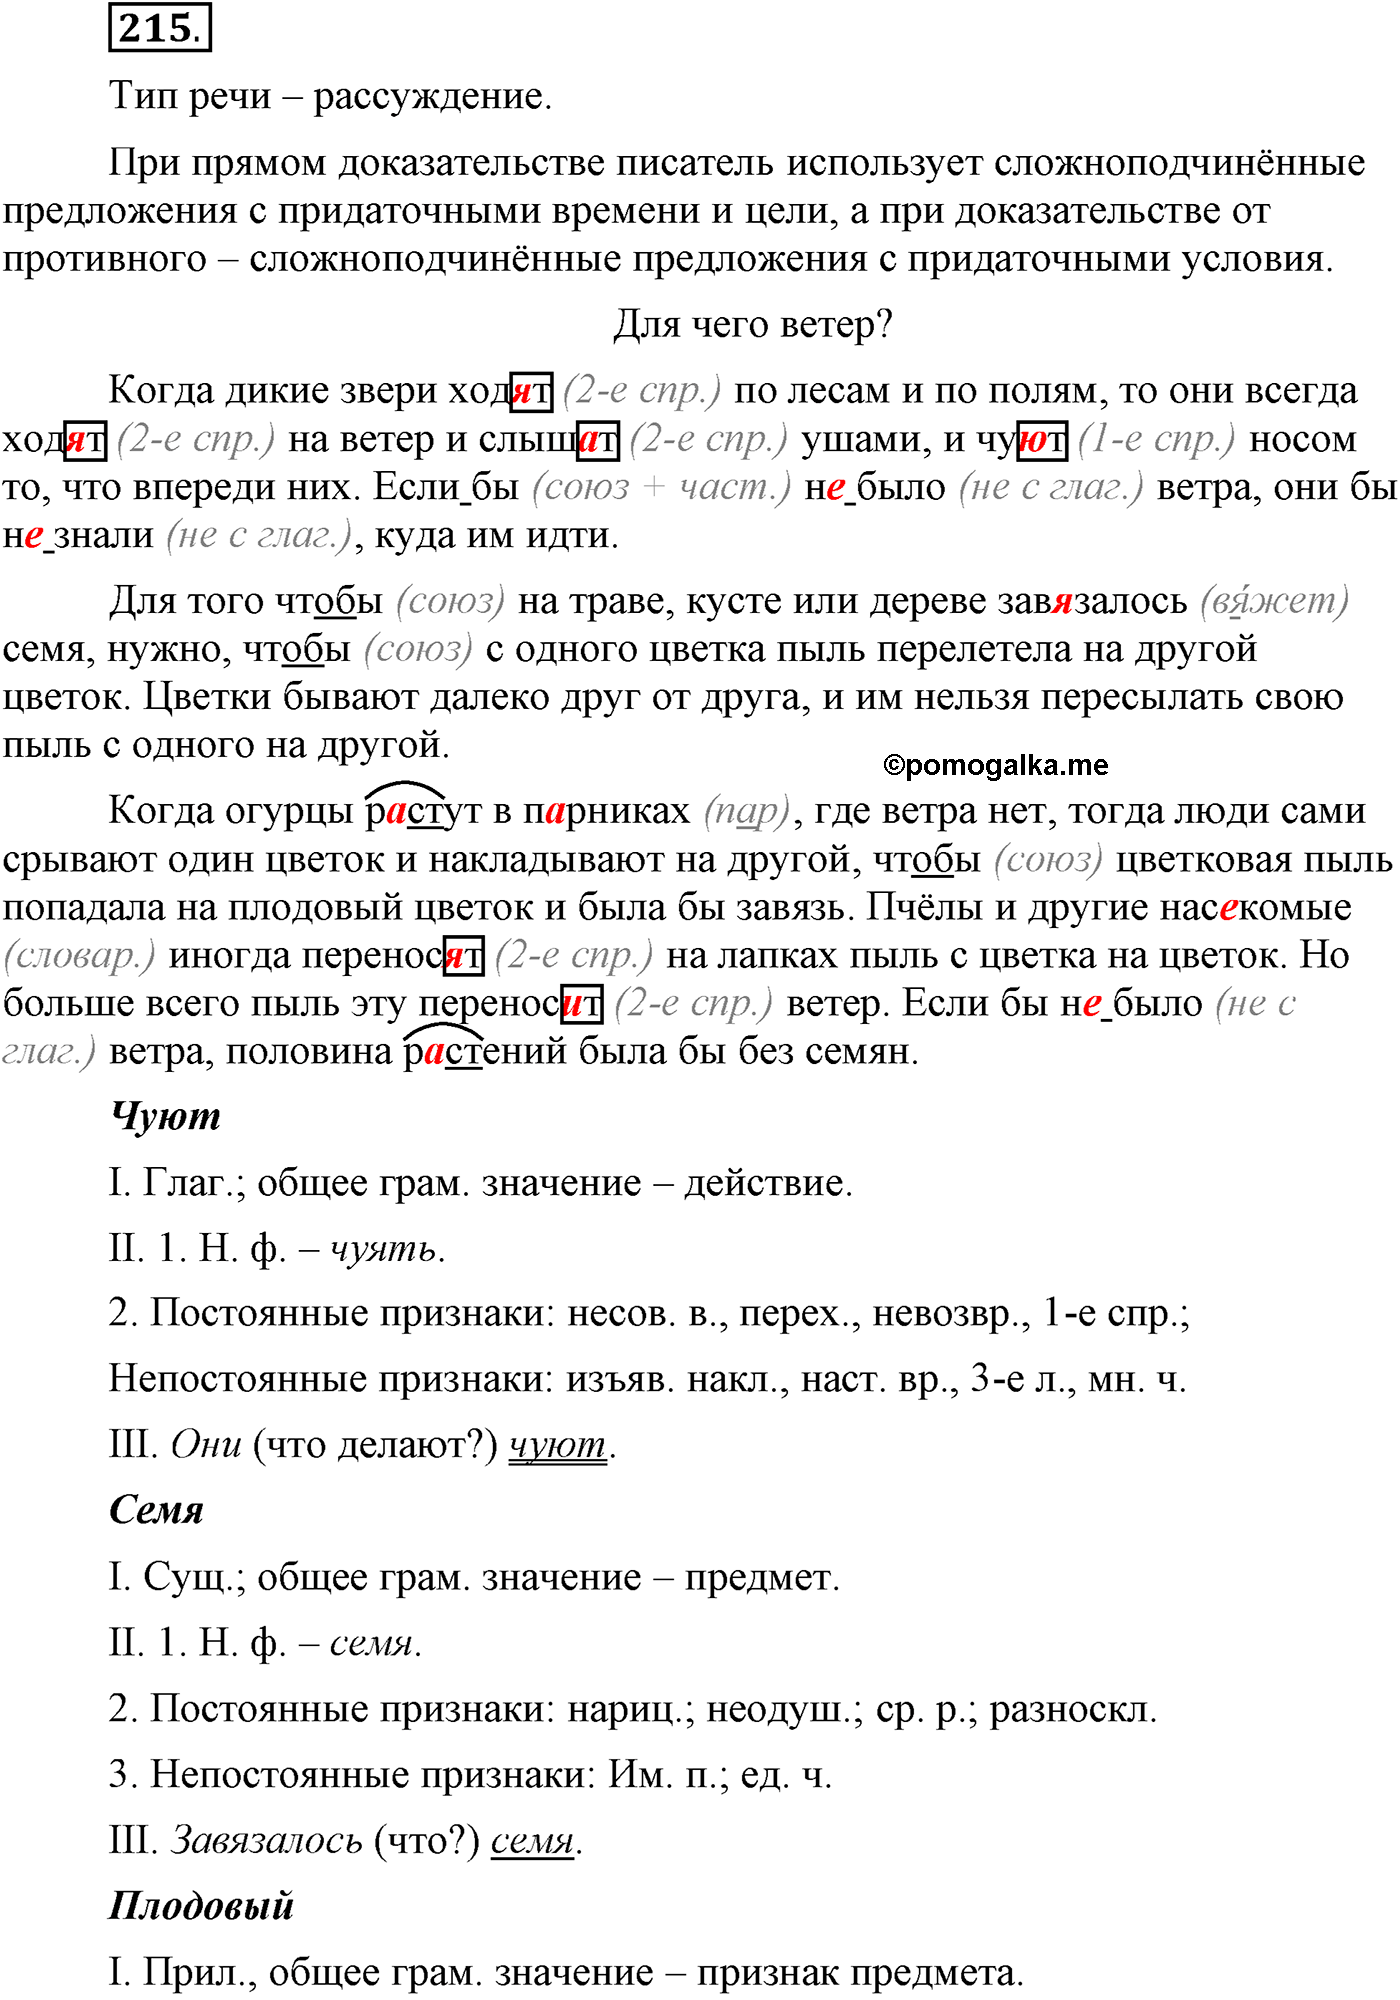 Упр 215 русский язык 9 класс ладыженская